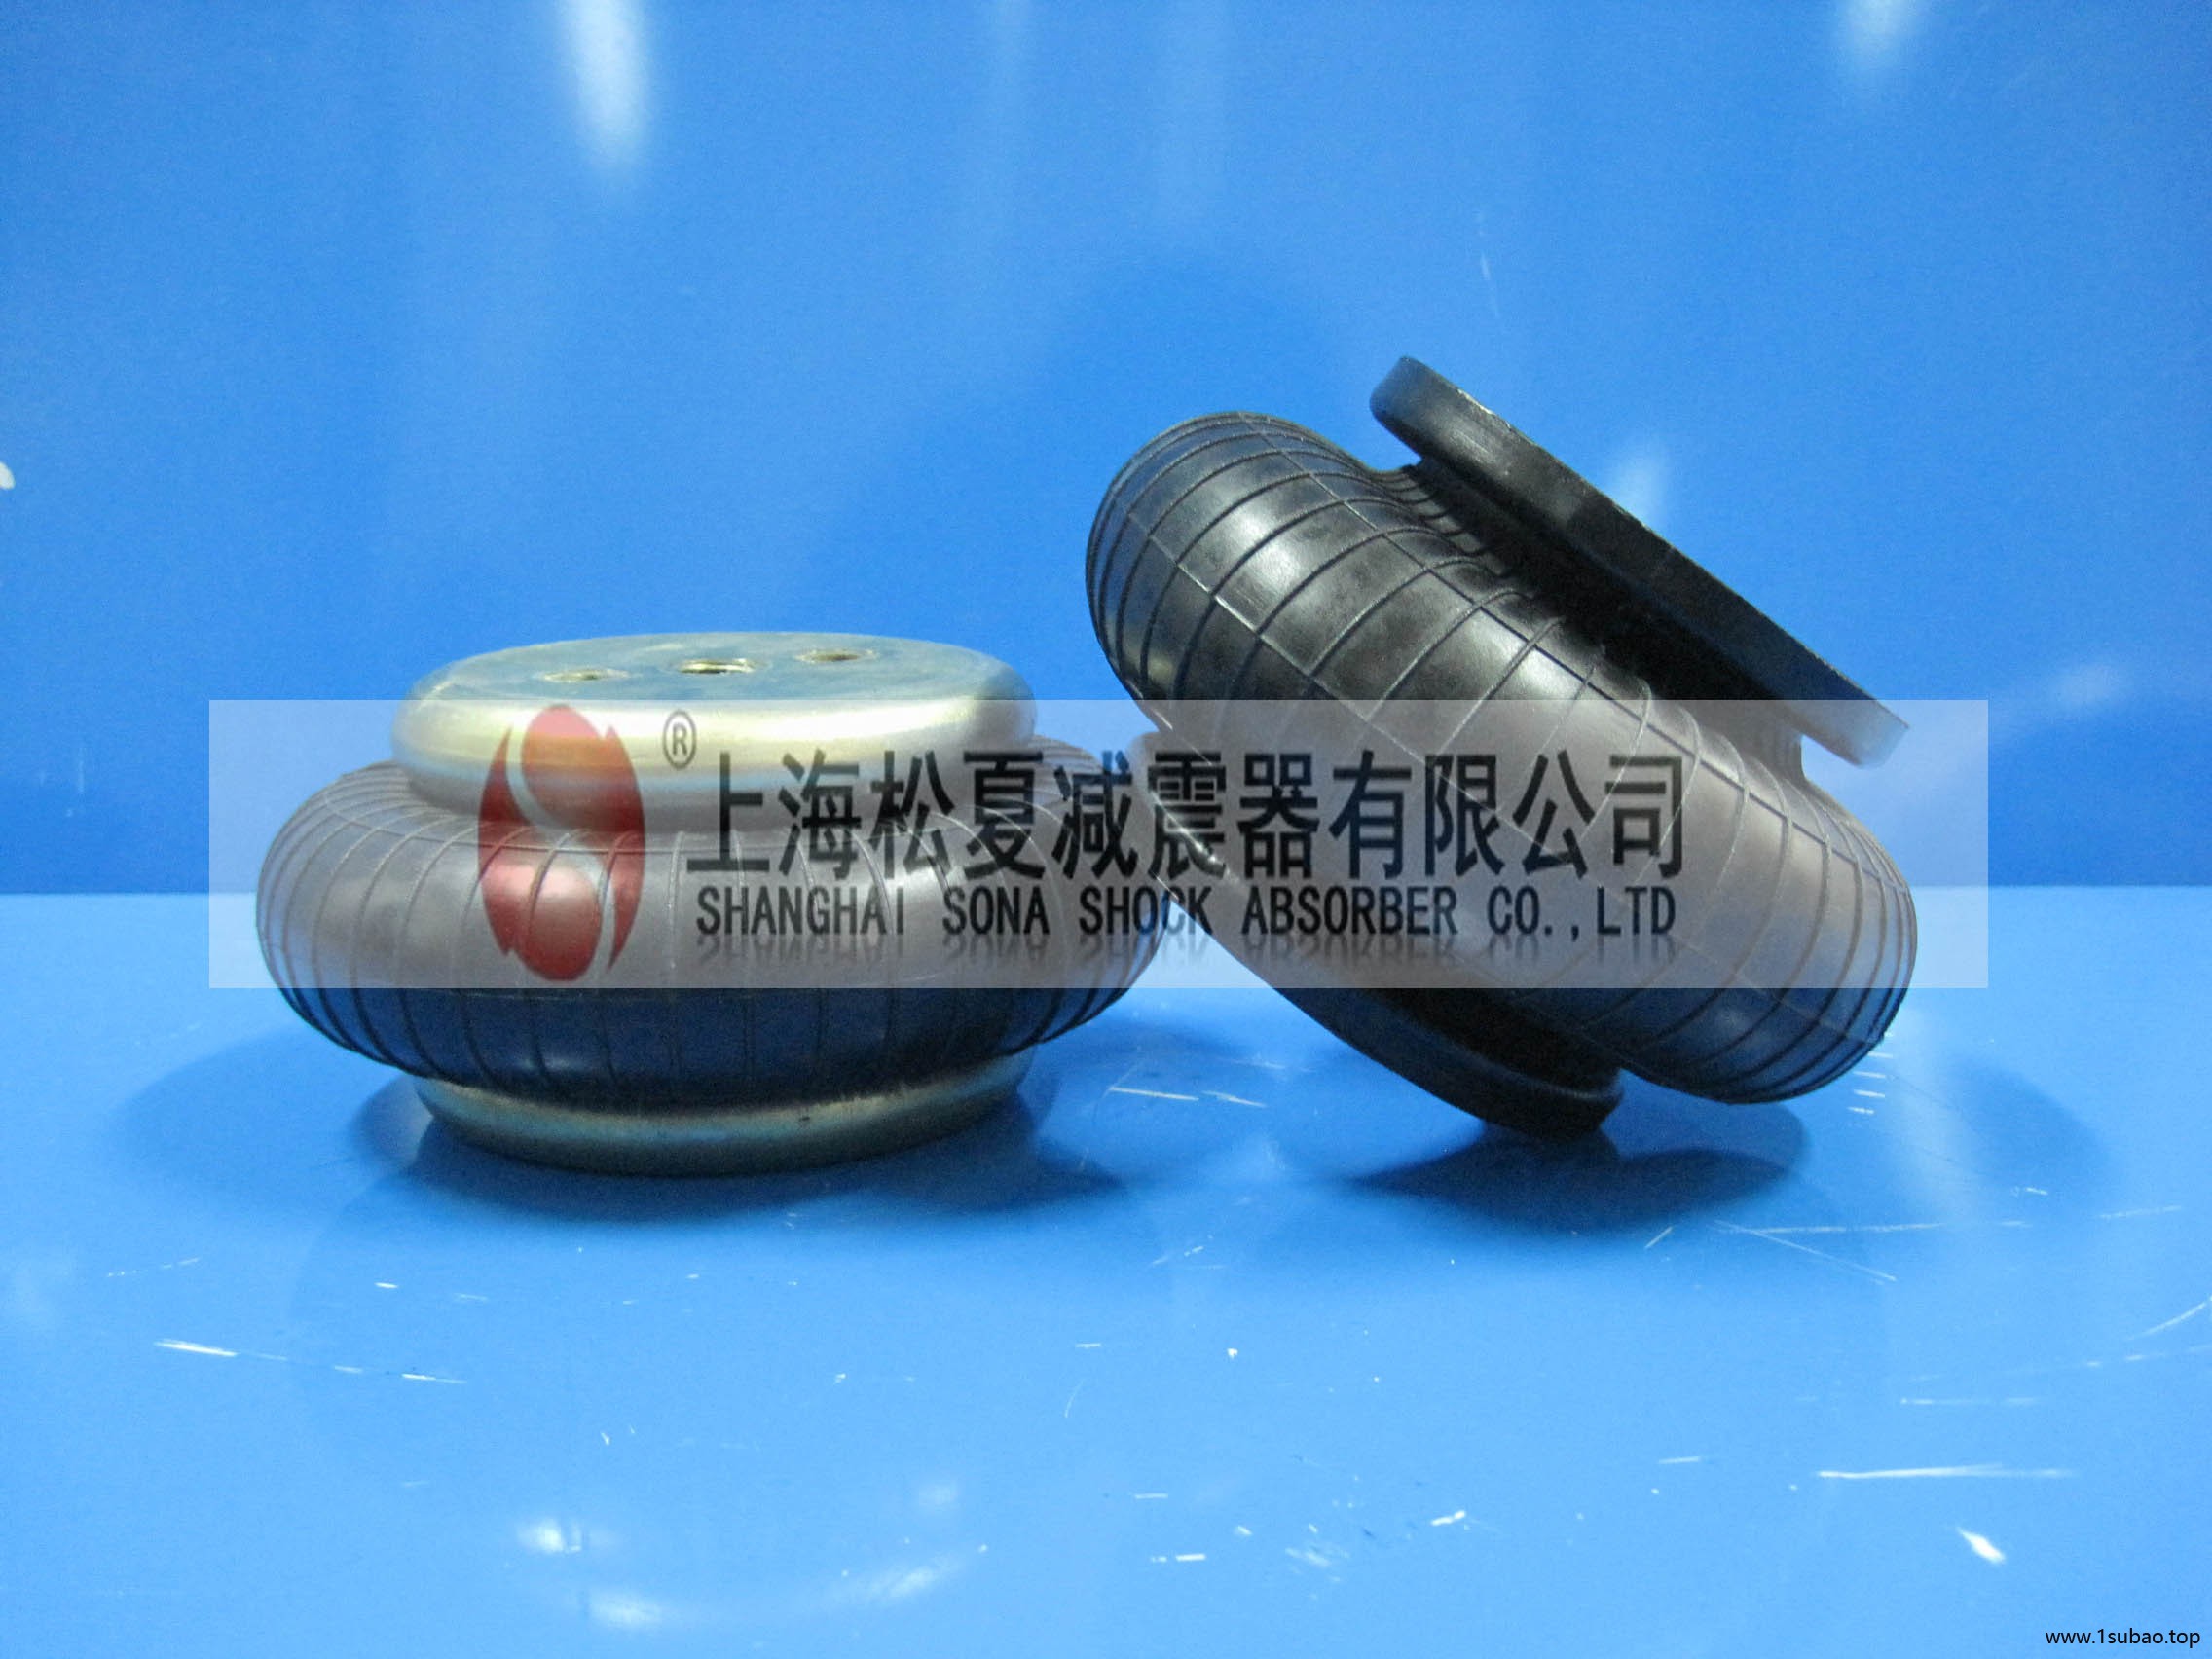 松夏厂家直销双囊式橡胶气囊 工业橡胶空气弹簧减震系统 车用减震空气弹簧